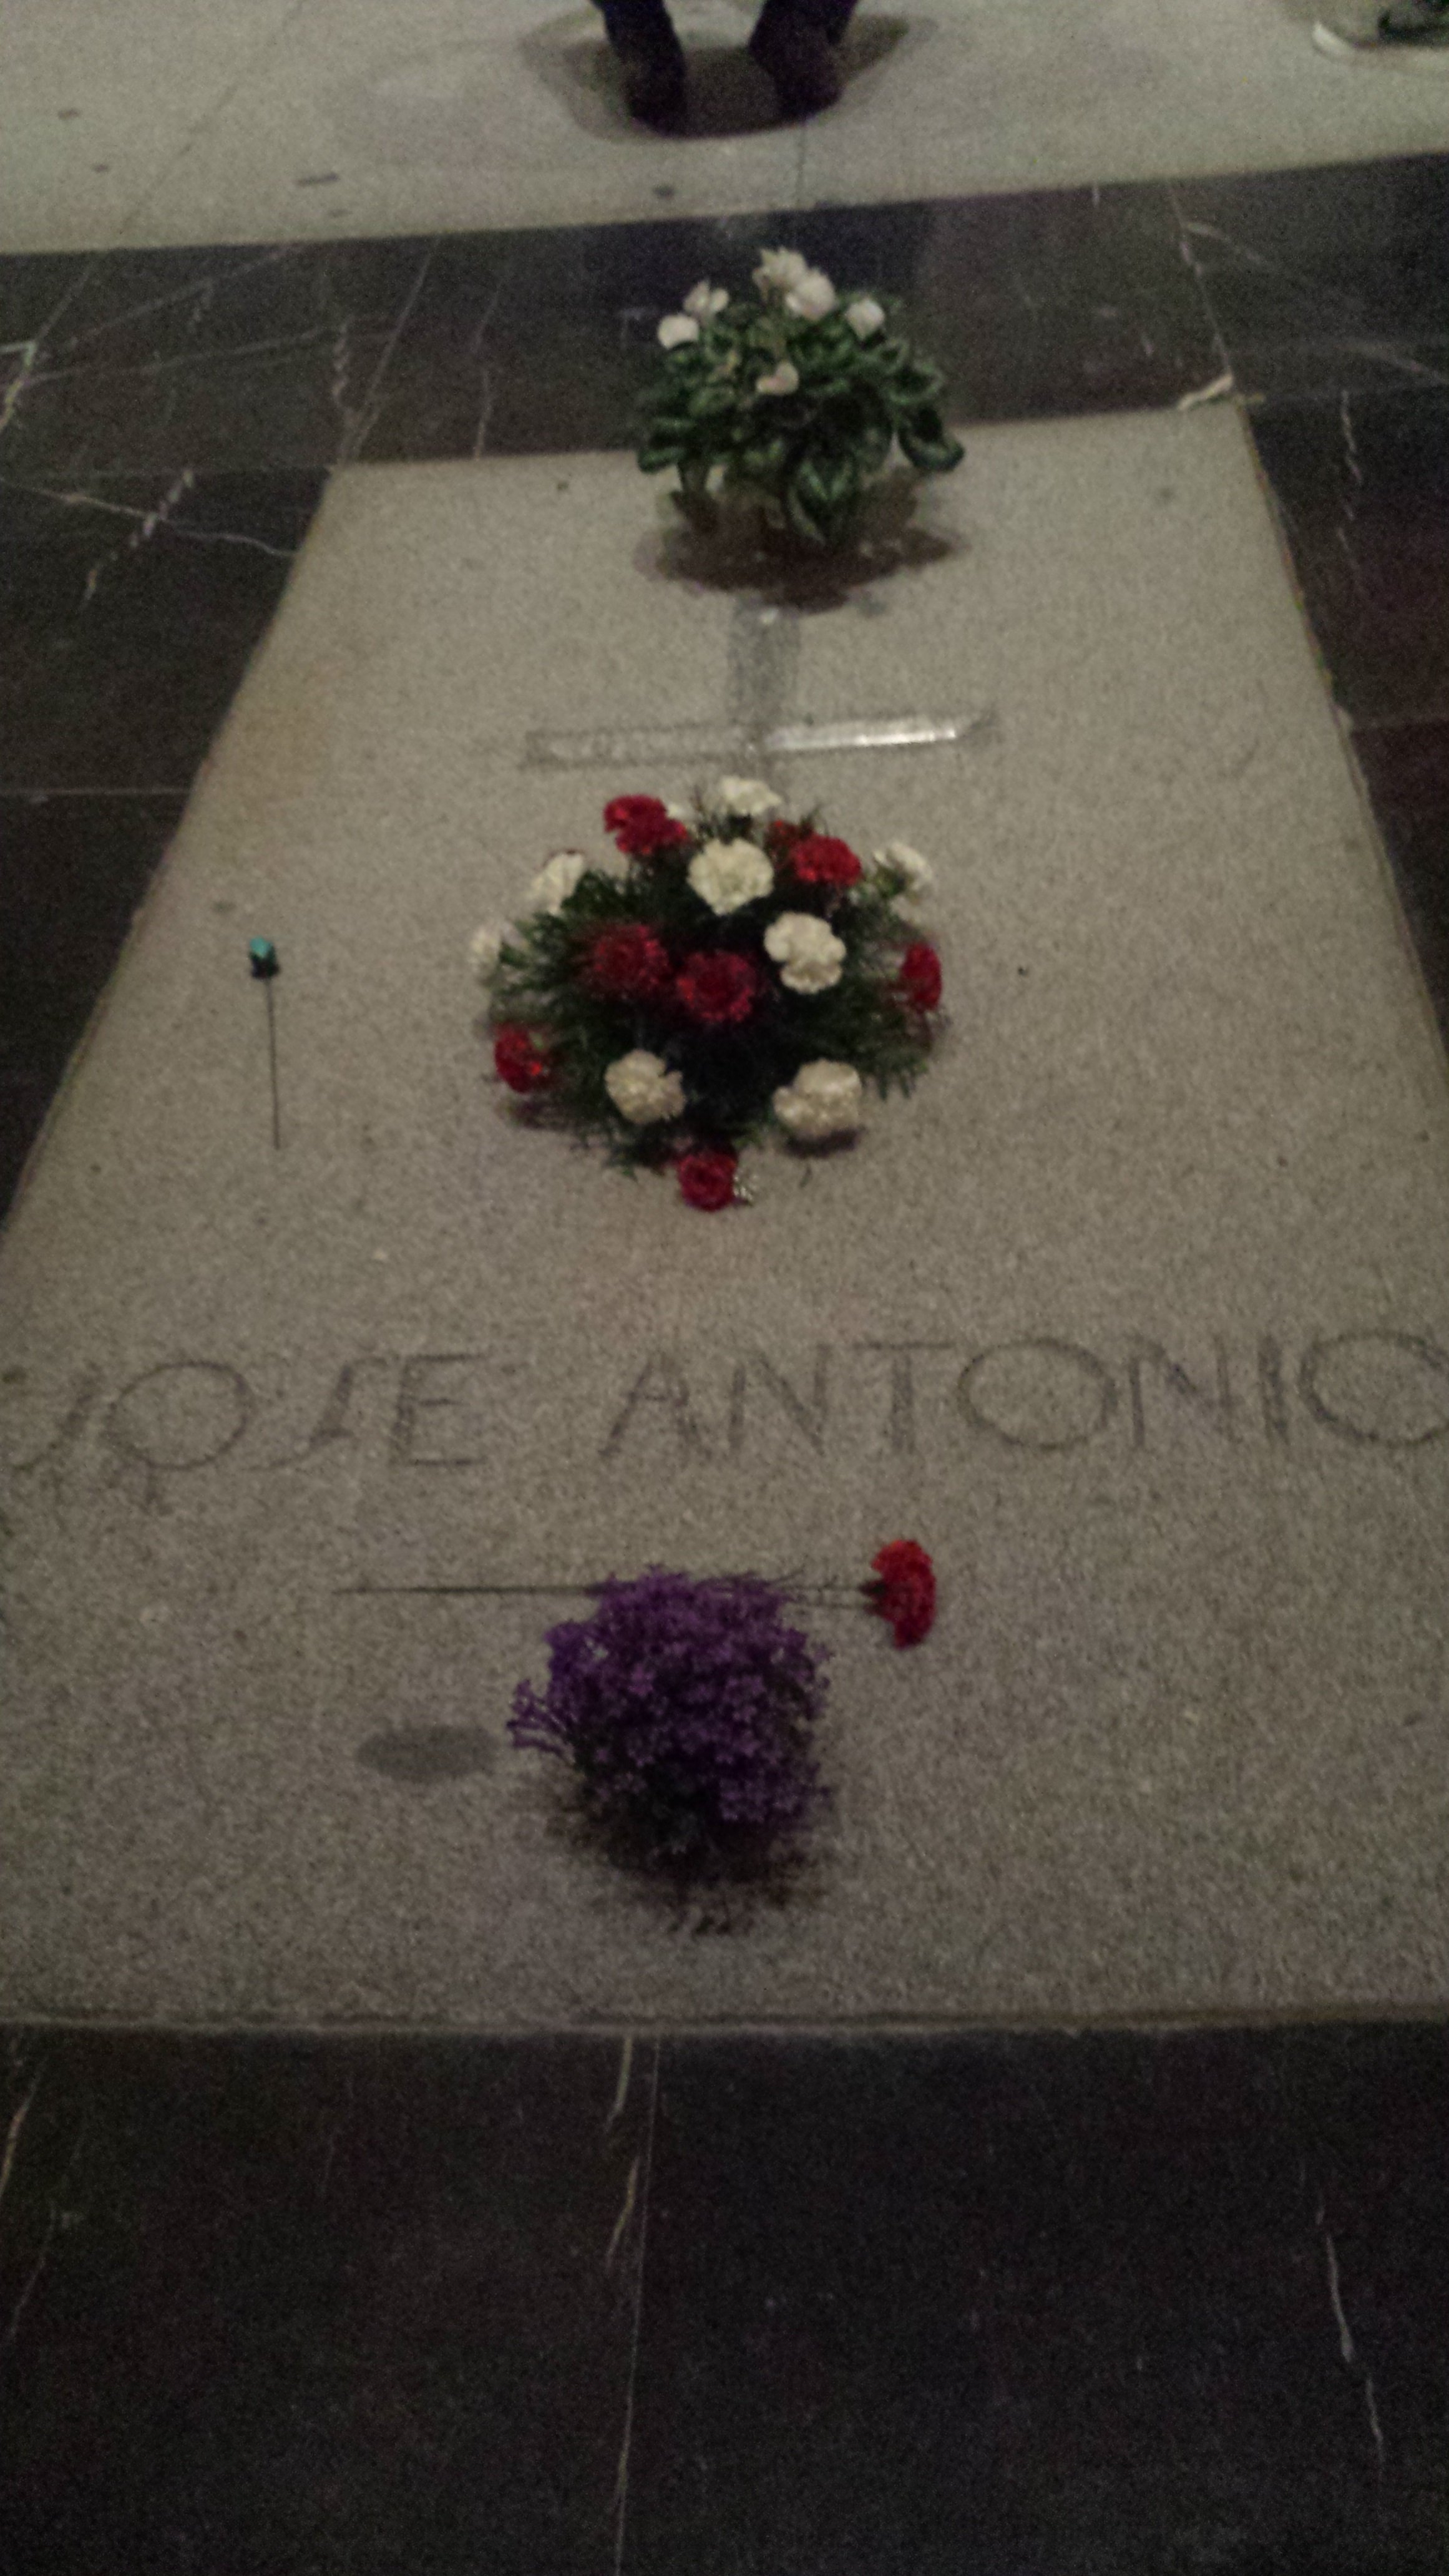 L'exhumació de Primo de Rivera ja té llicència: és el govern espanyol qui decidirà, no la família